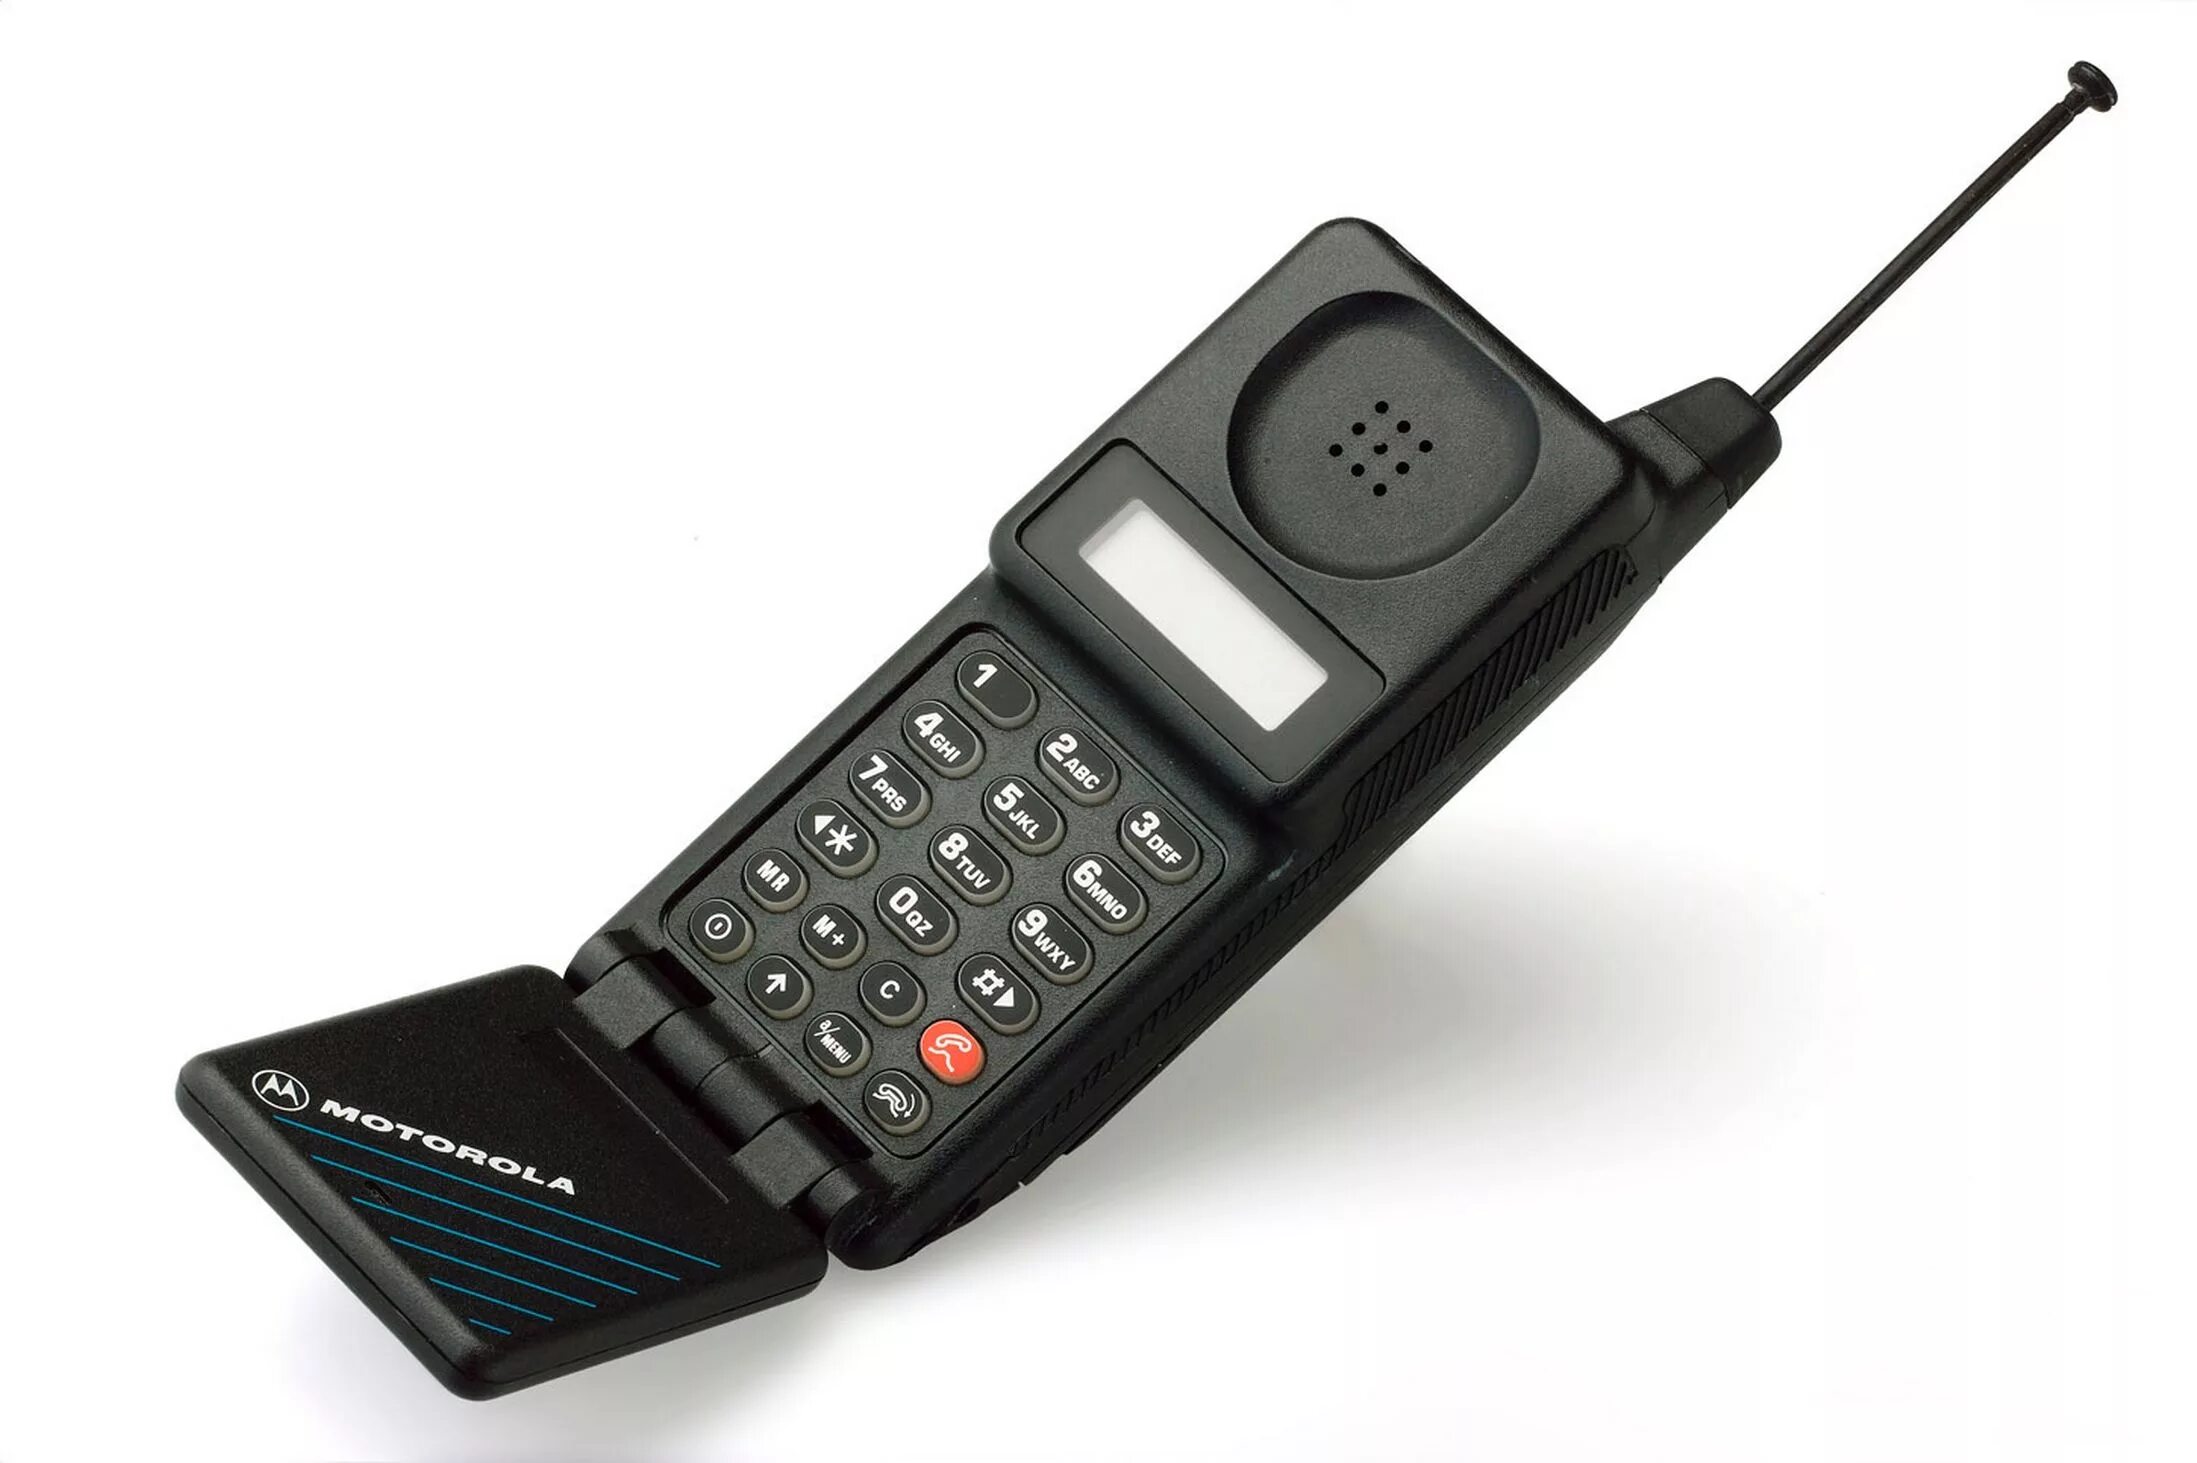 Motorola MICROTAC 9800x. Моторола микротак 9800. Motorola 1989. Motorola MICROTAC 1989. Московский сотовый телефон